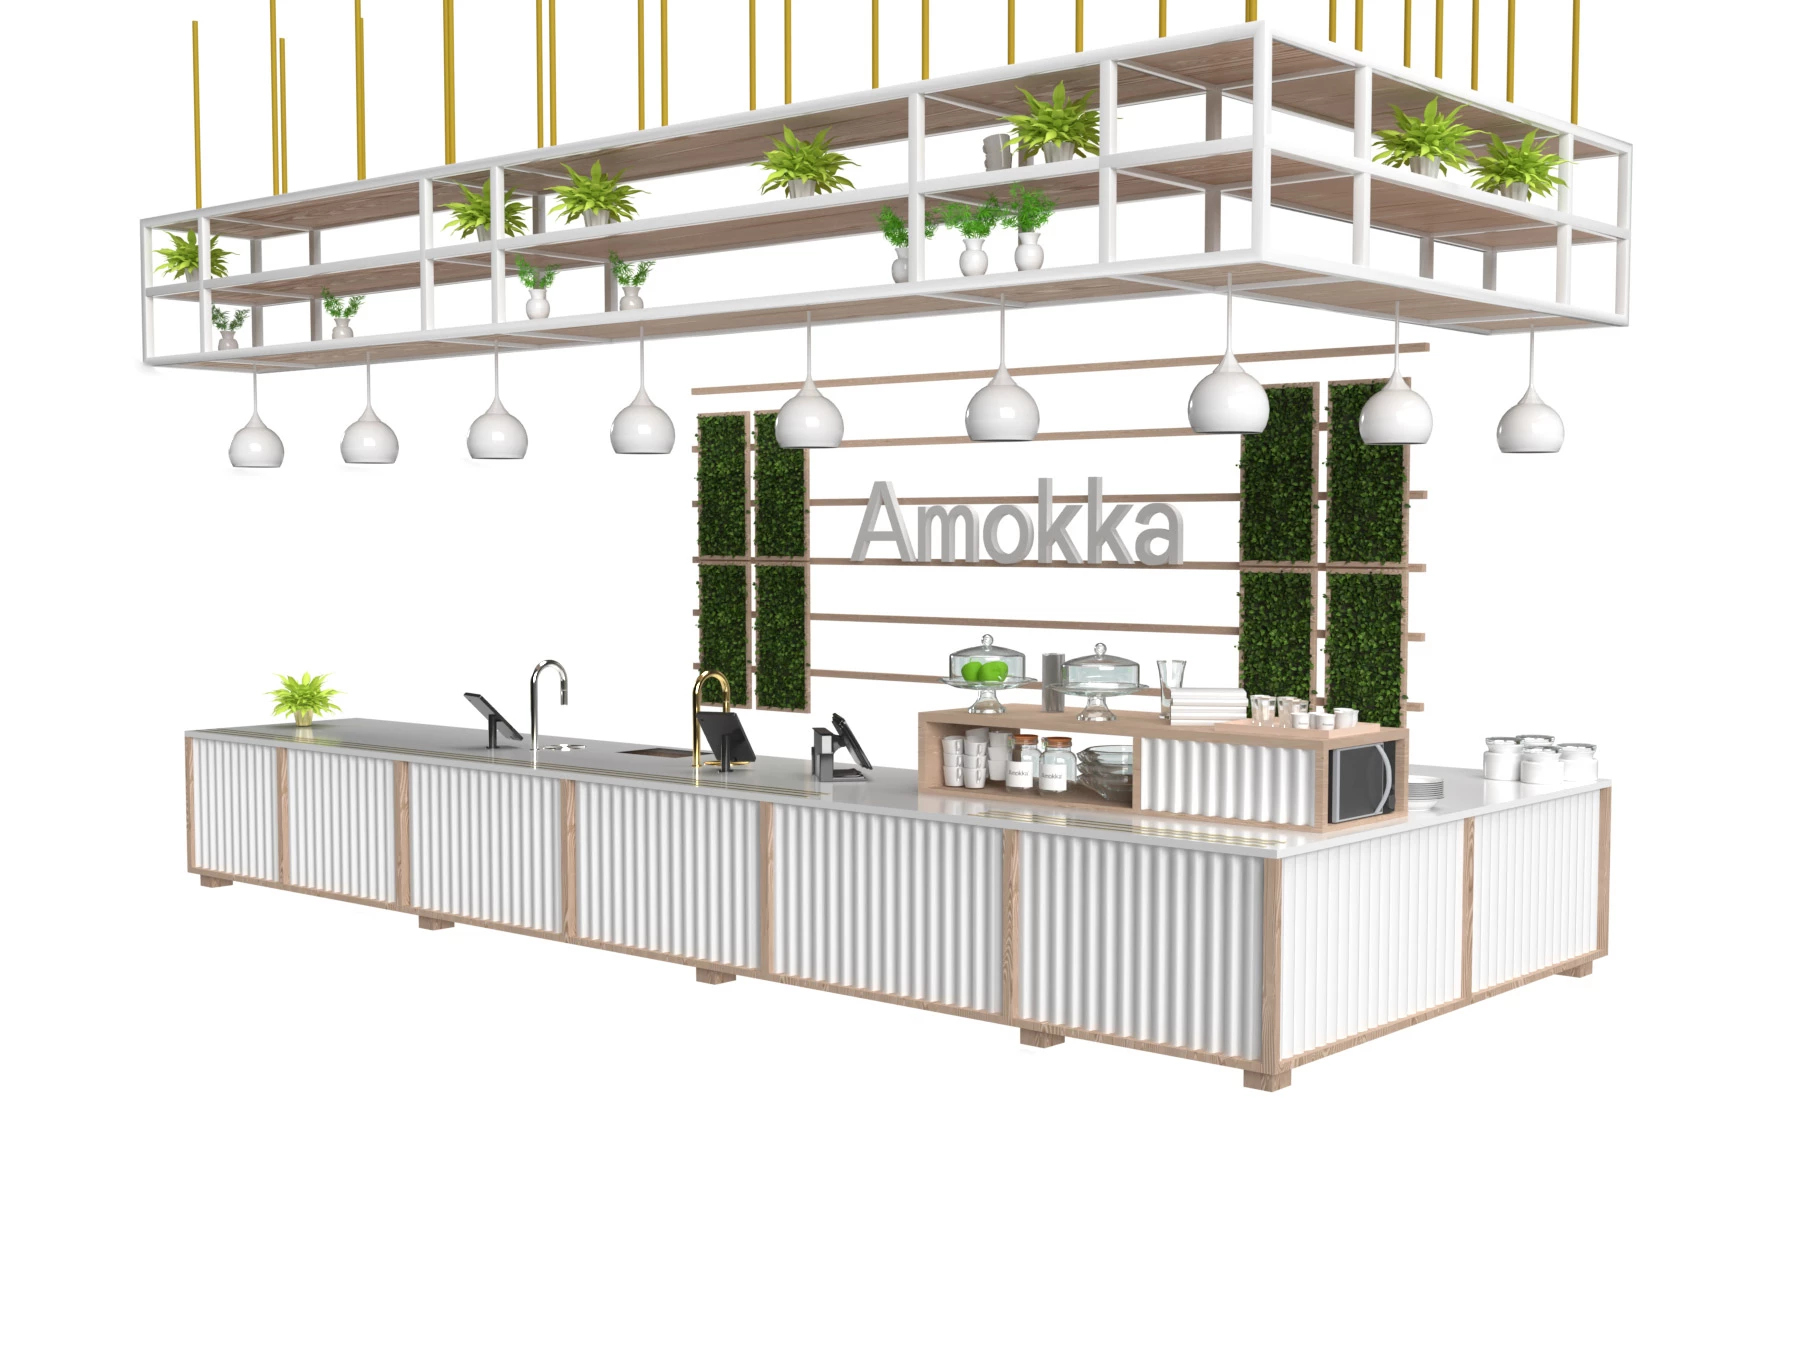 Amokka Cafe Side View